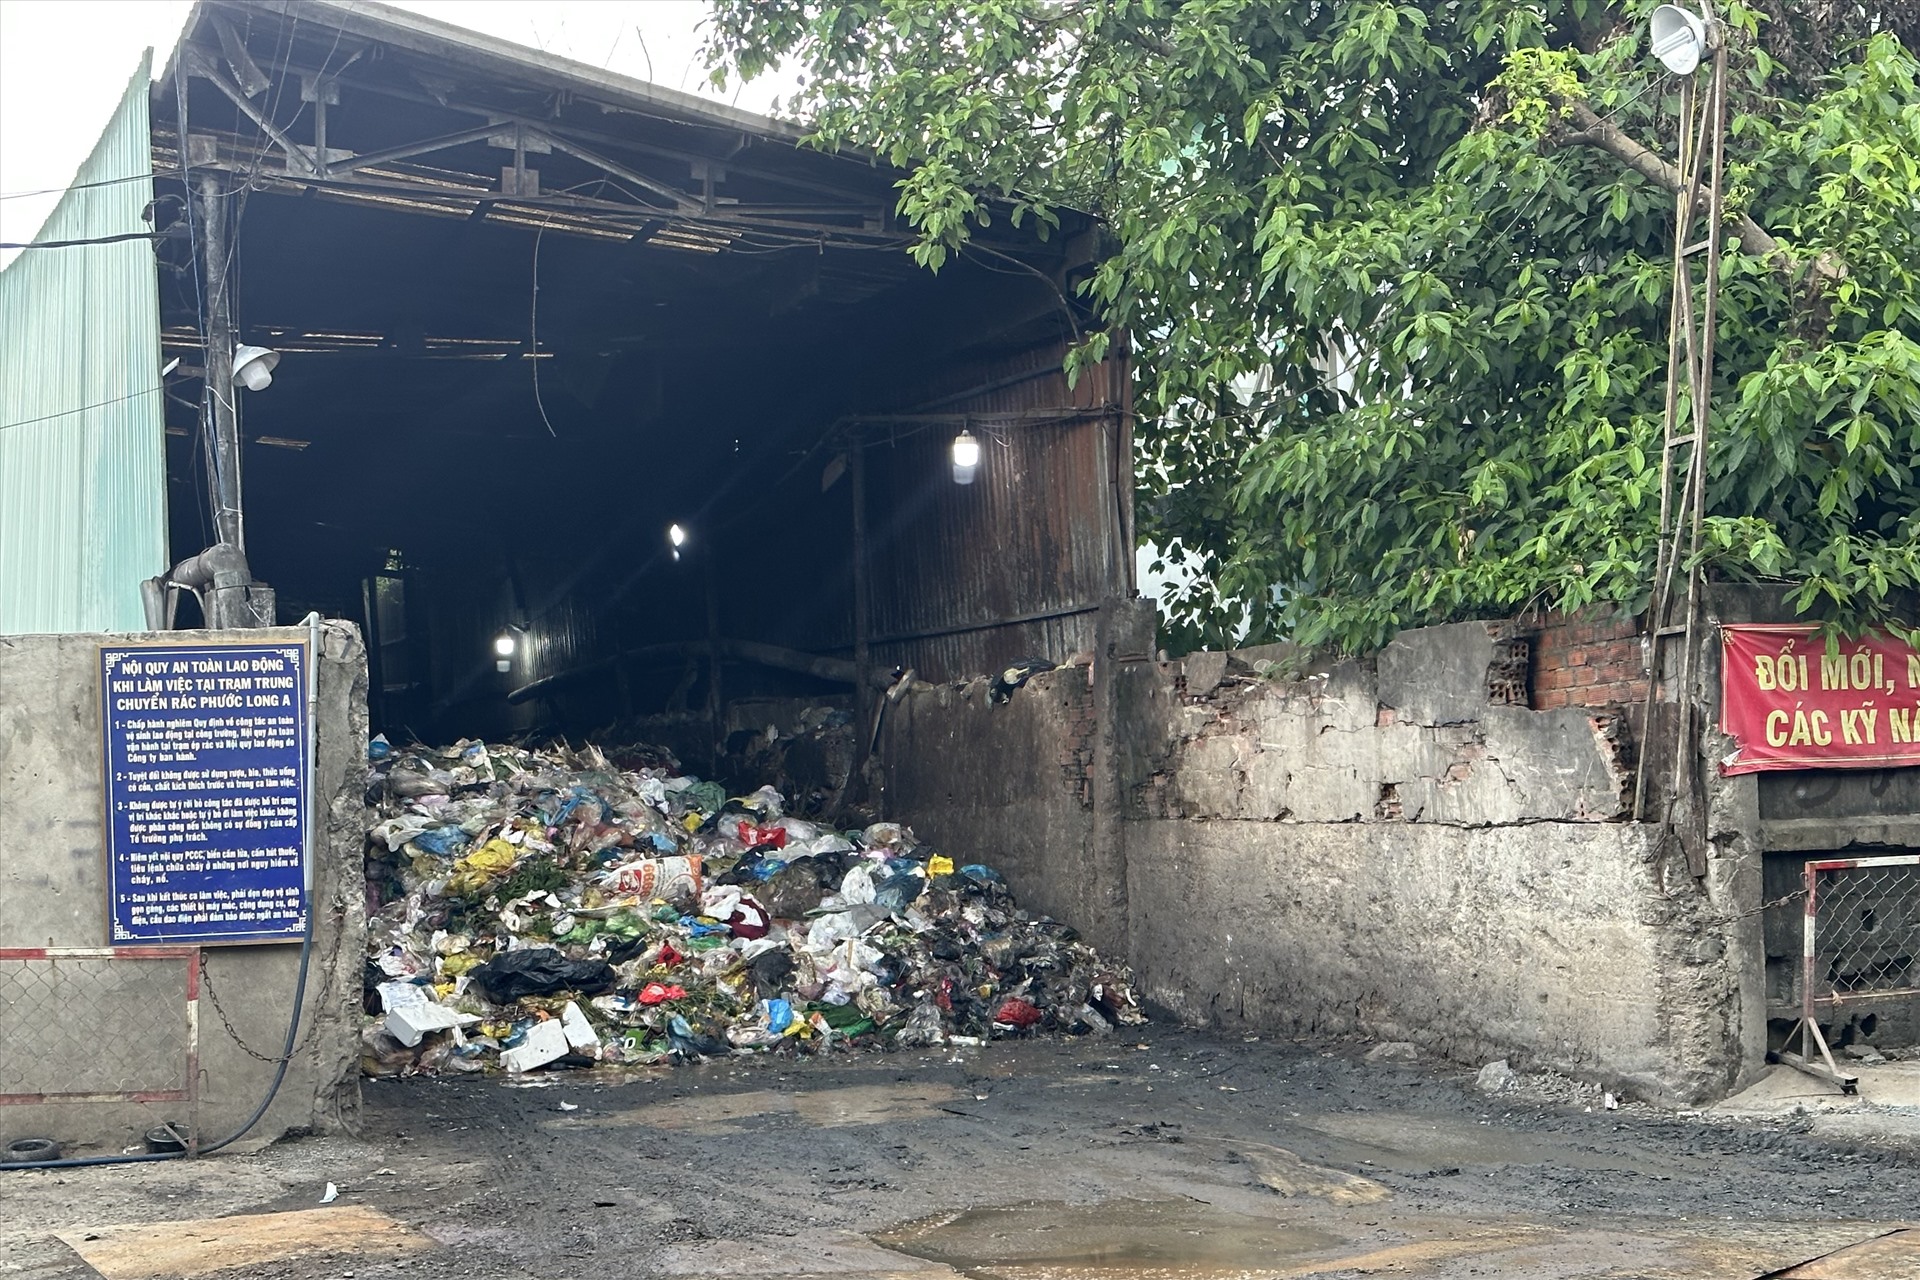 Uỷ ban nhân dân thành phố Thủ Đức đang quy hoạch để dừng hoạt động bãi tập kết rác này. Ảnh: Thanh Vũ